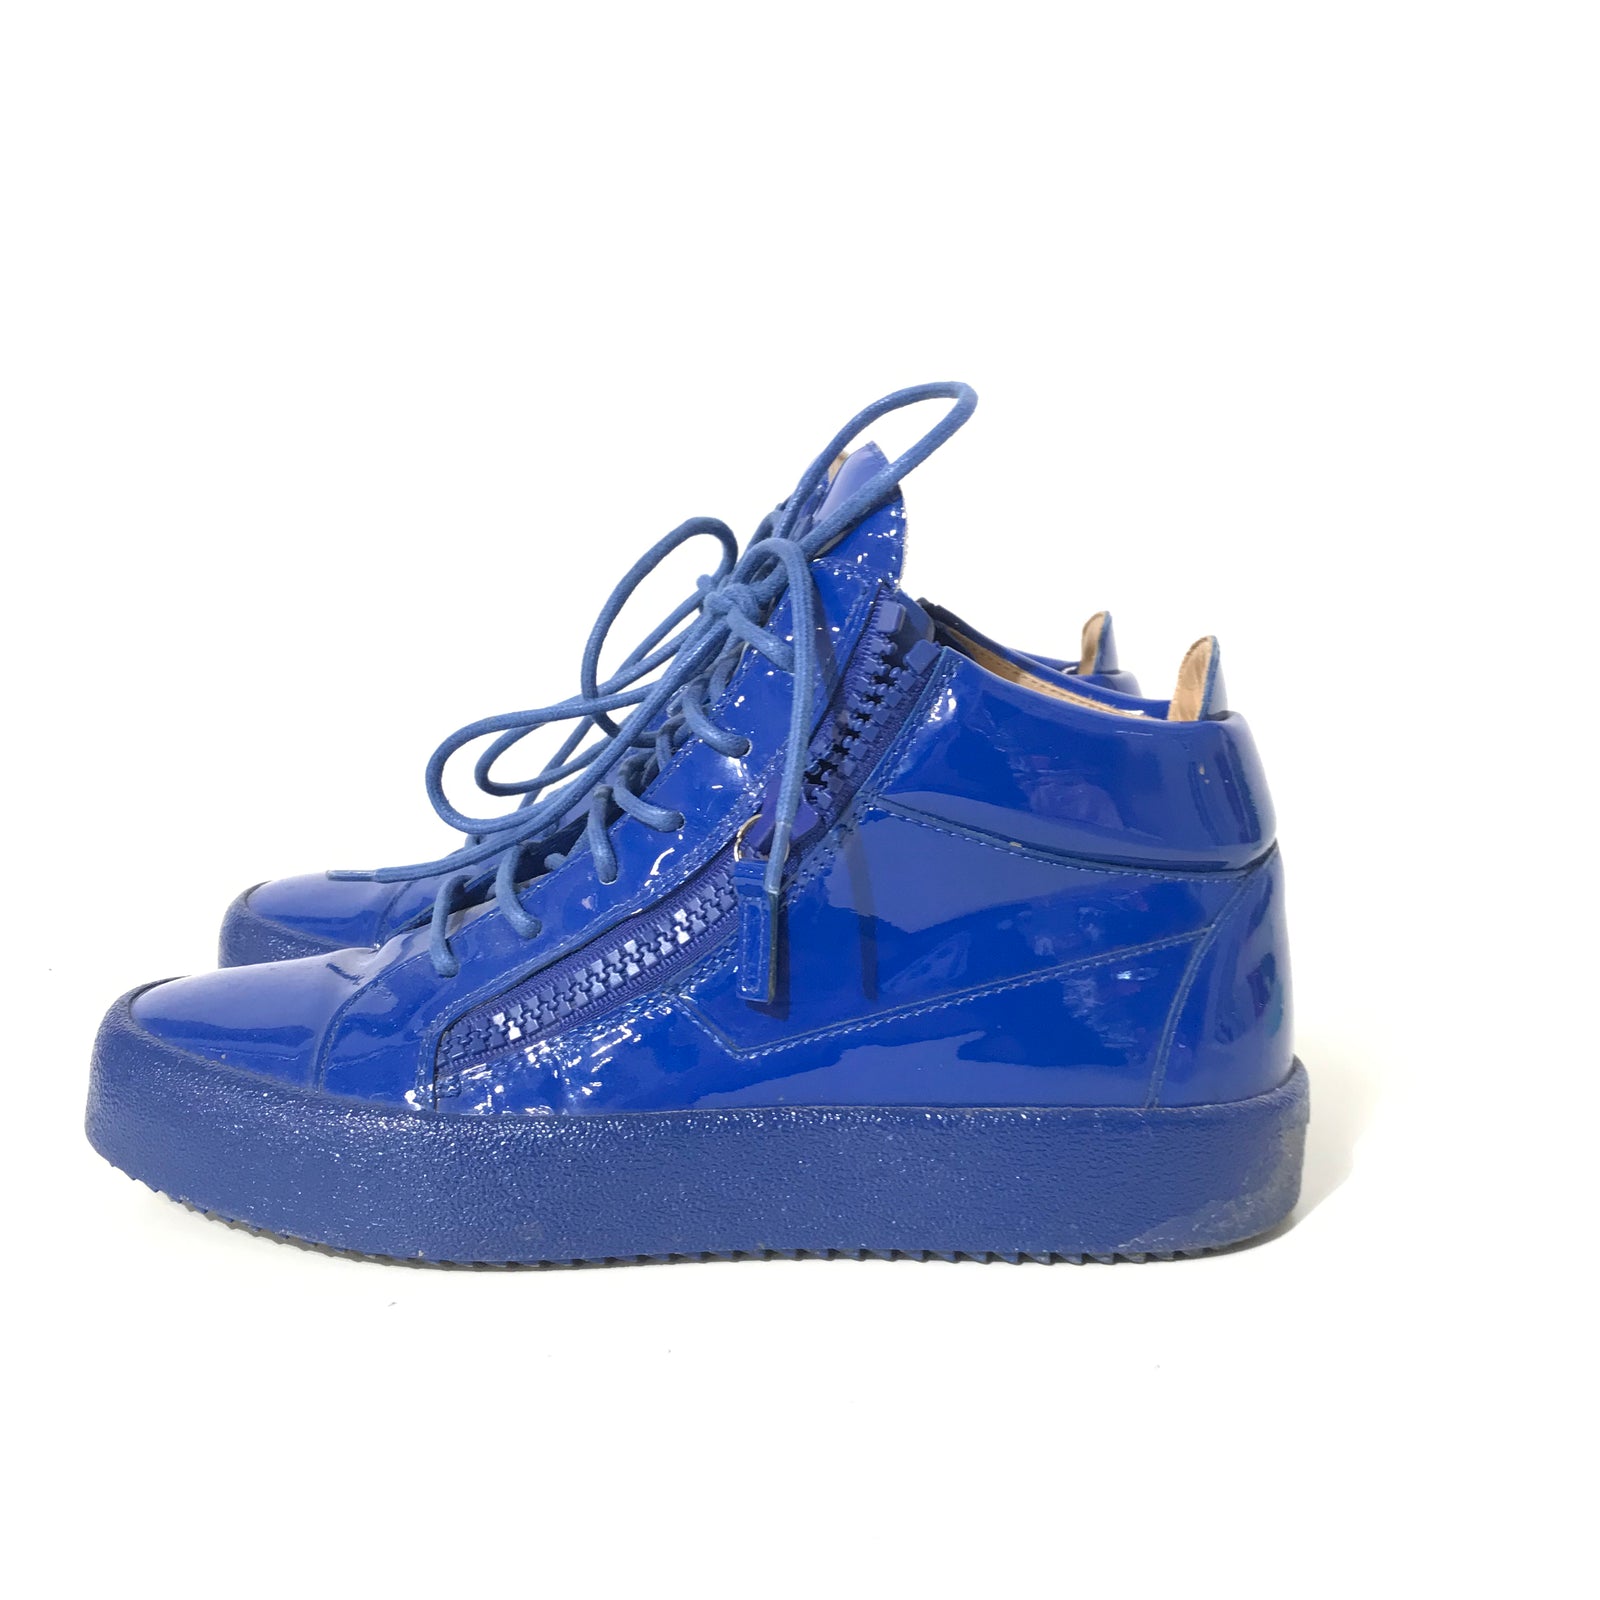 Blue Platform Sneakers